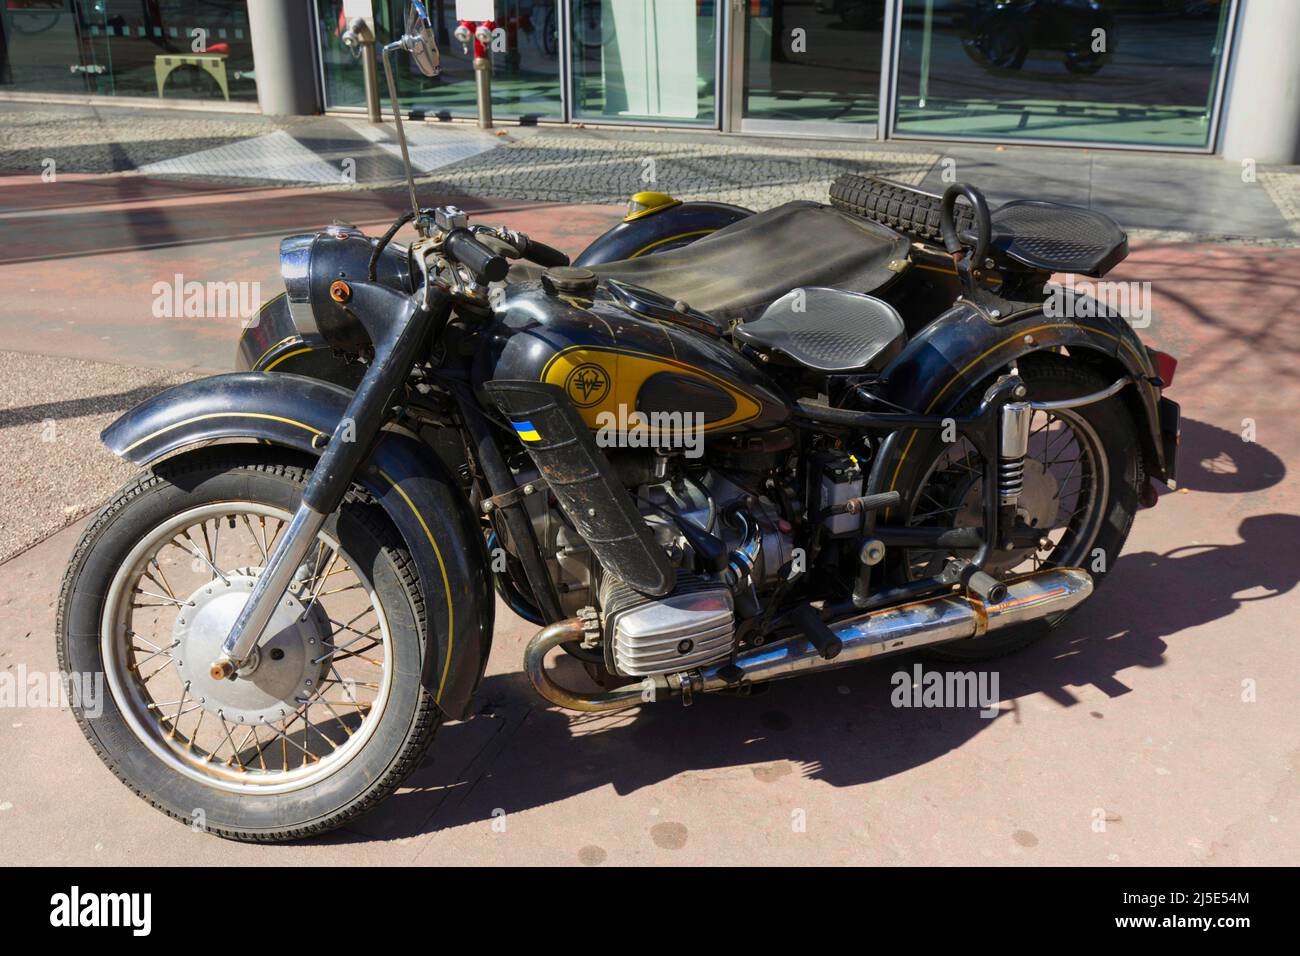 Dnepr MT-16 marque de moto produite à Kiev, Ukraine Banque D'Images